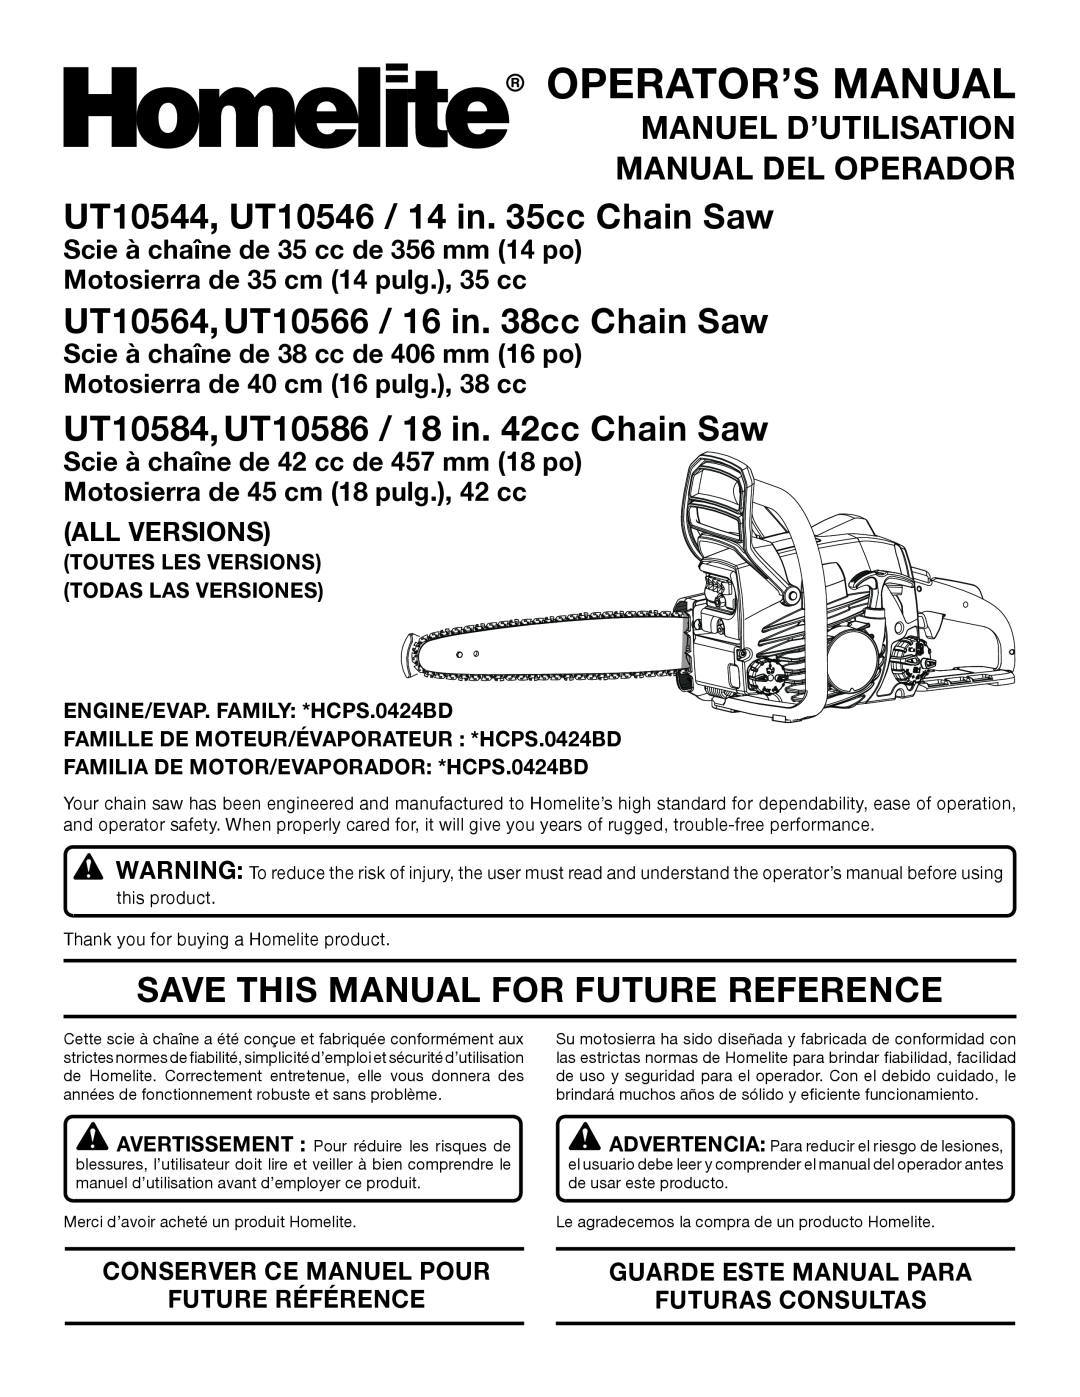 Homelite UT10584 manuel dutilisation UT10544, UT10546 / 14 in. 35cc Chain Saw, UT10564, UT10566 / 16 in. 38cc Chain Saw 